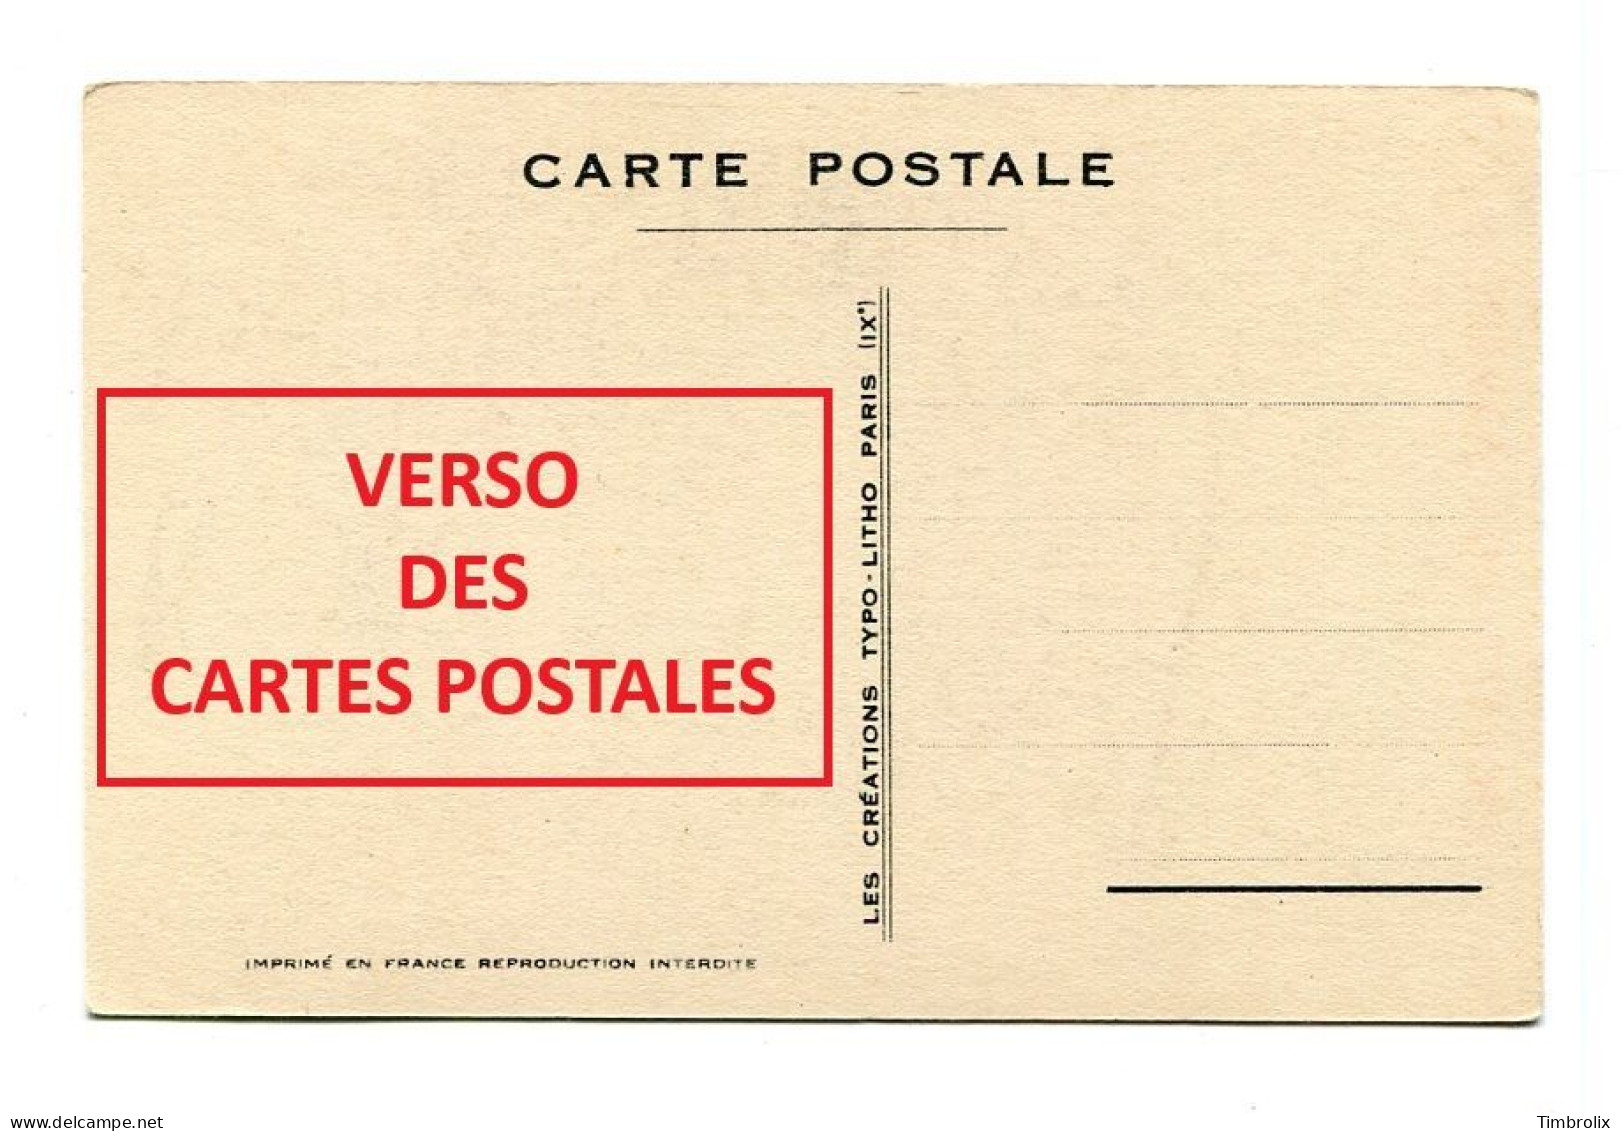 PICRATE AUX ARMEES - 10 Cartes postales humoristiques signées DEFAUCHY Illustrateur - Série complète.